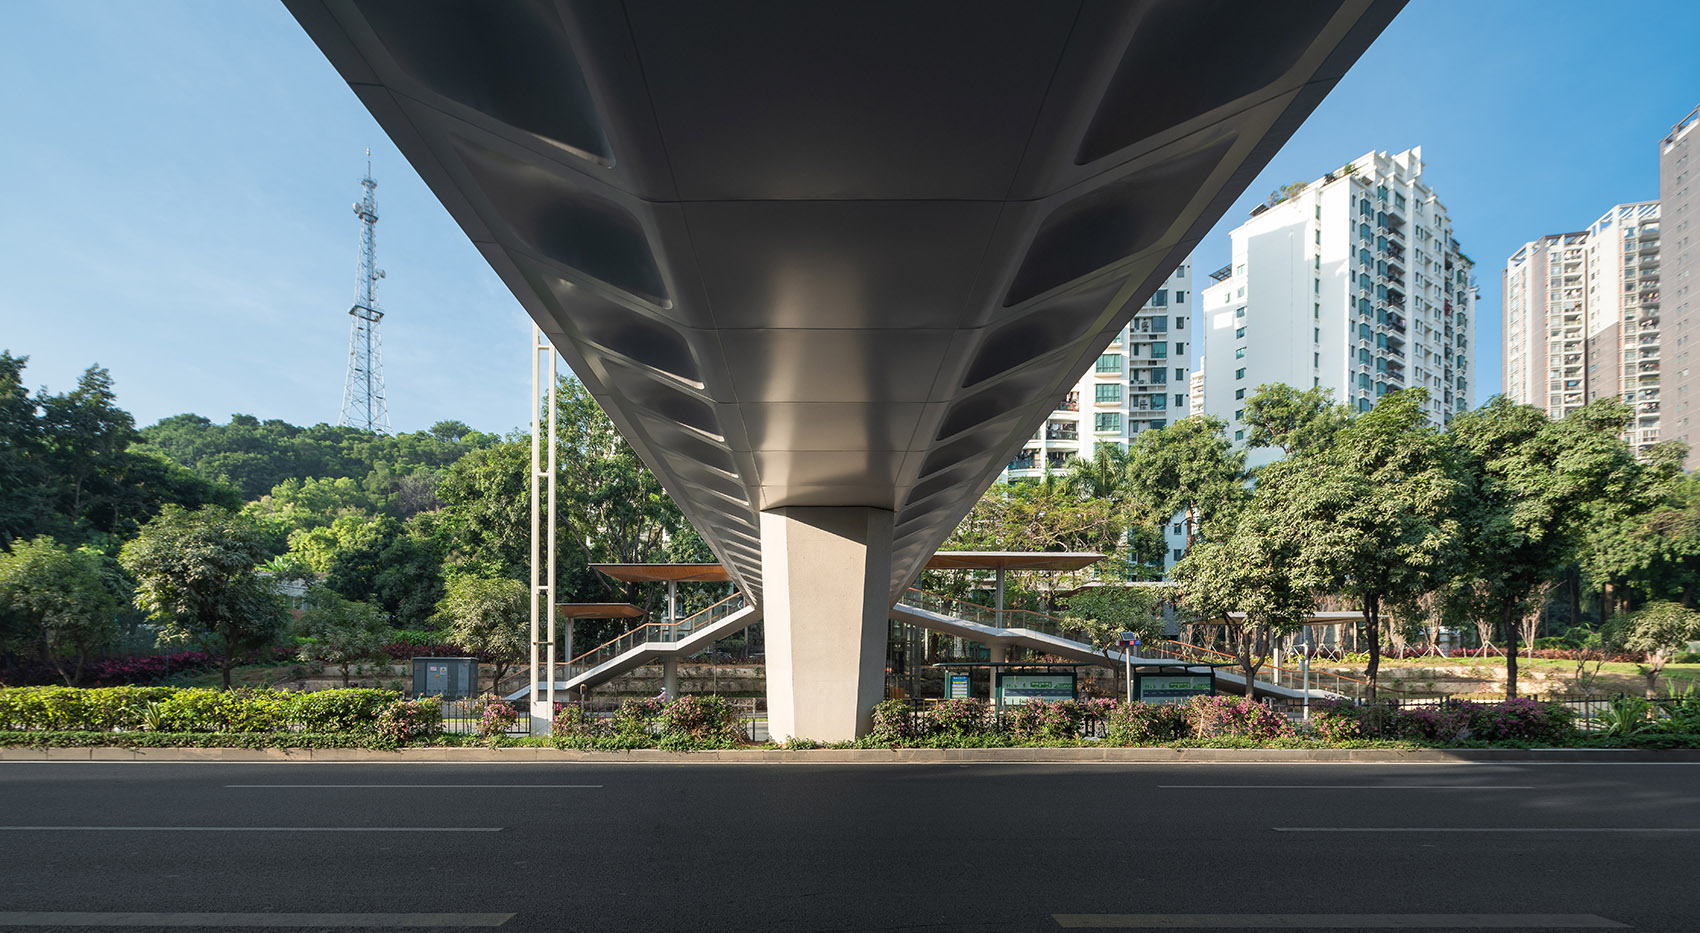 深圳水围天桥/利用想象和创意赋予天桥品质感和仪式感-56